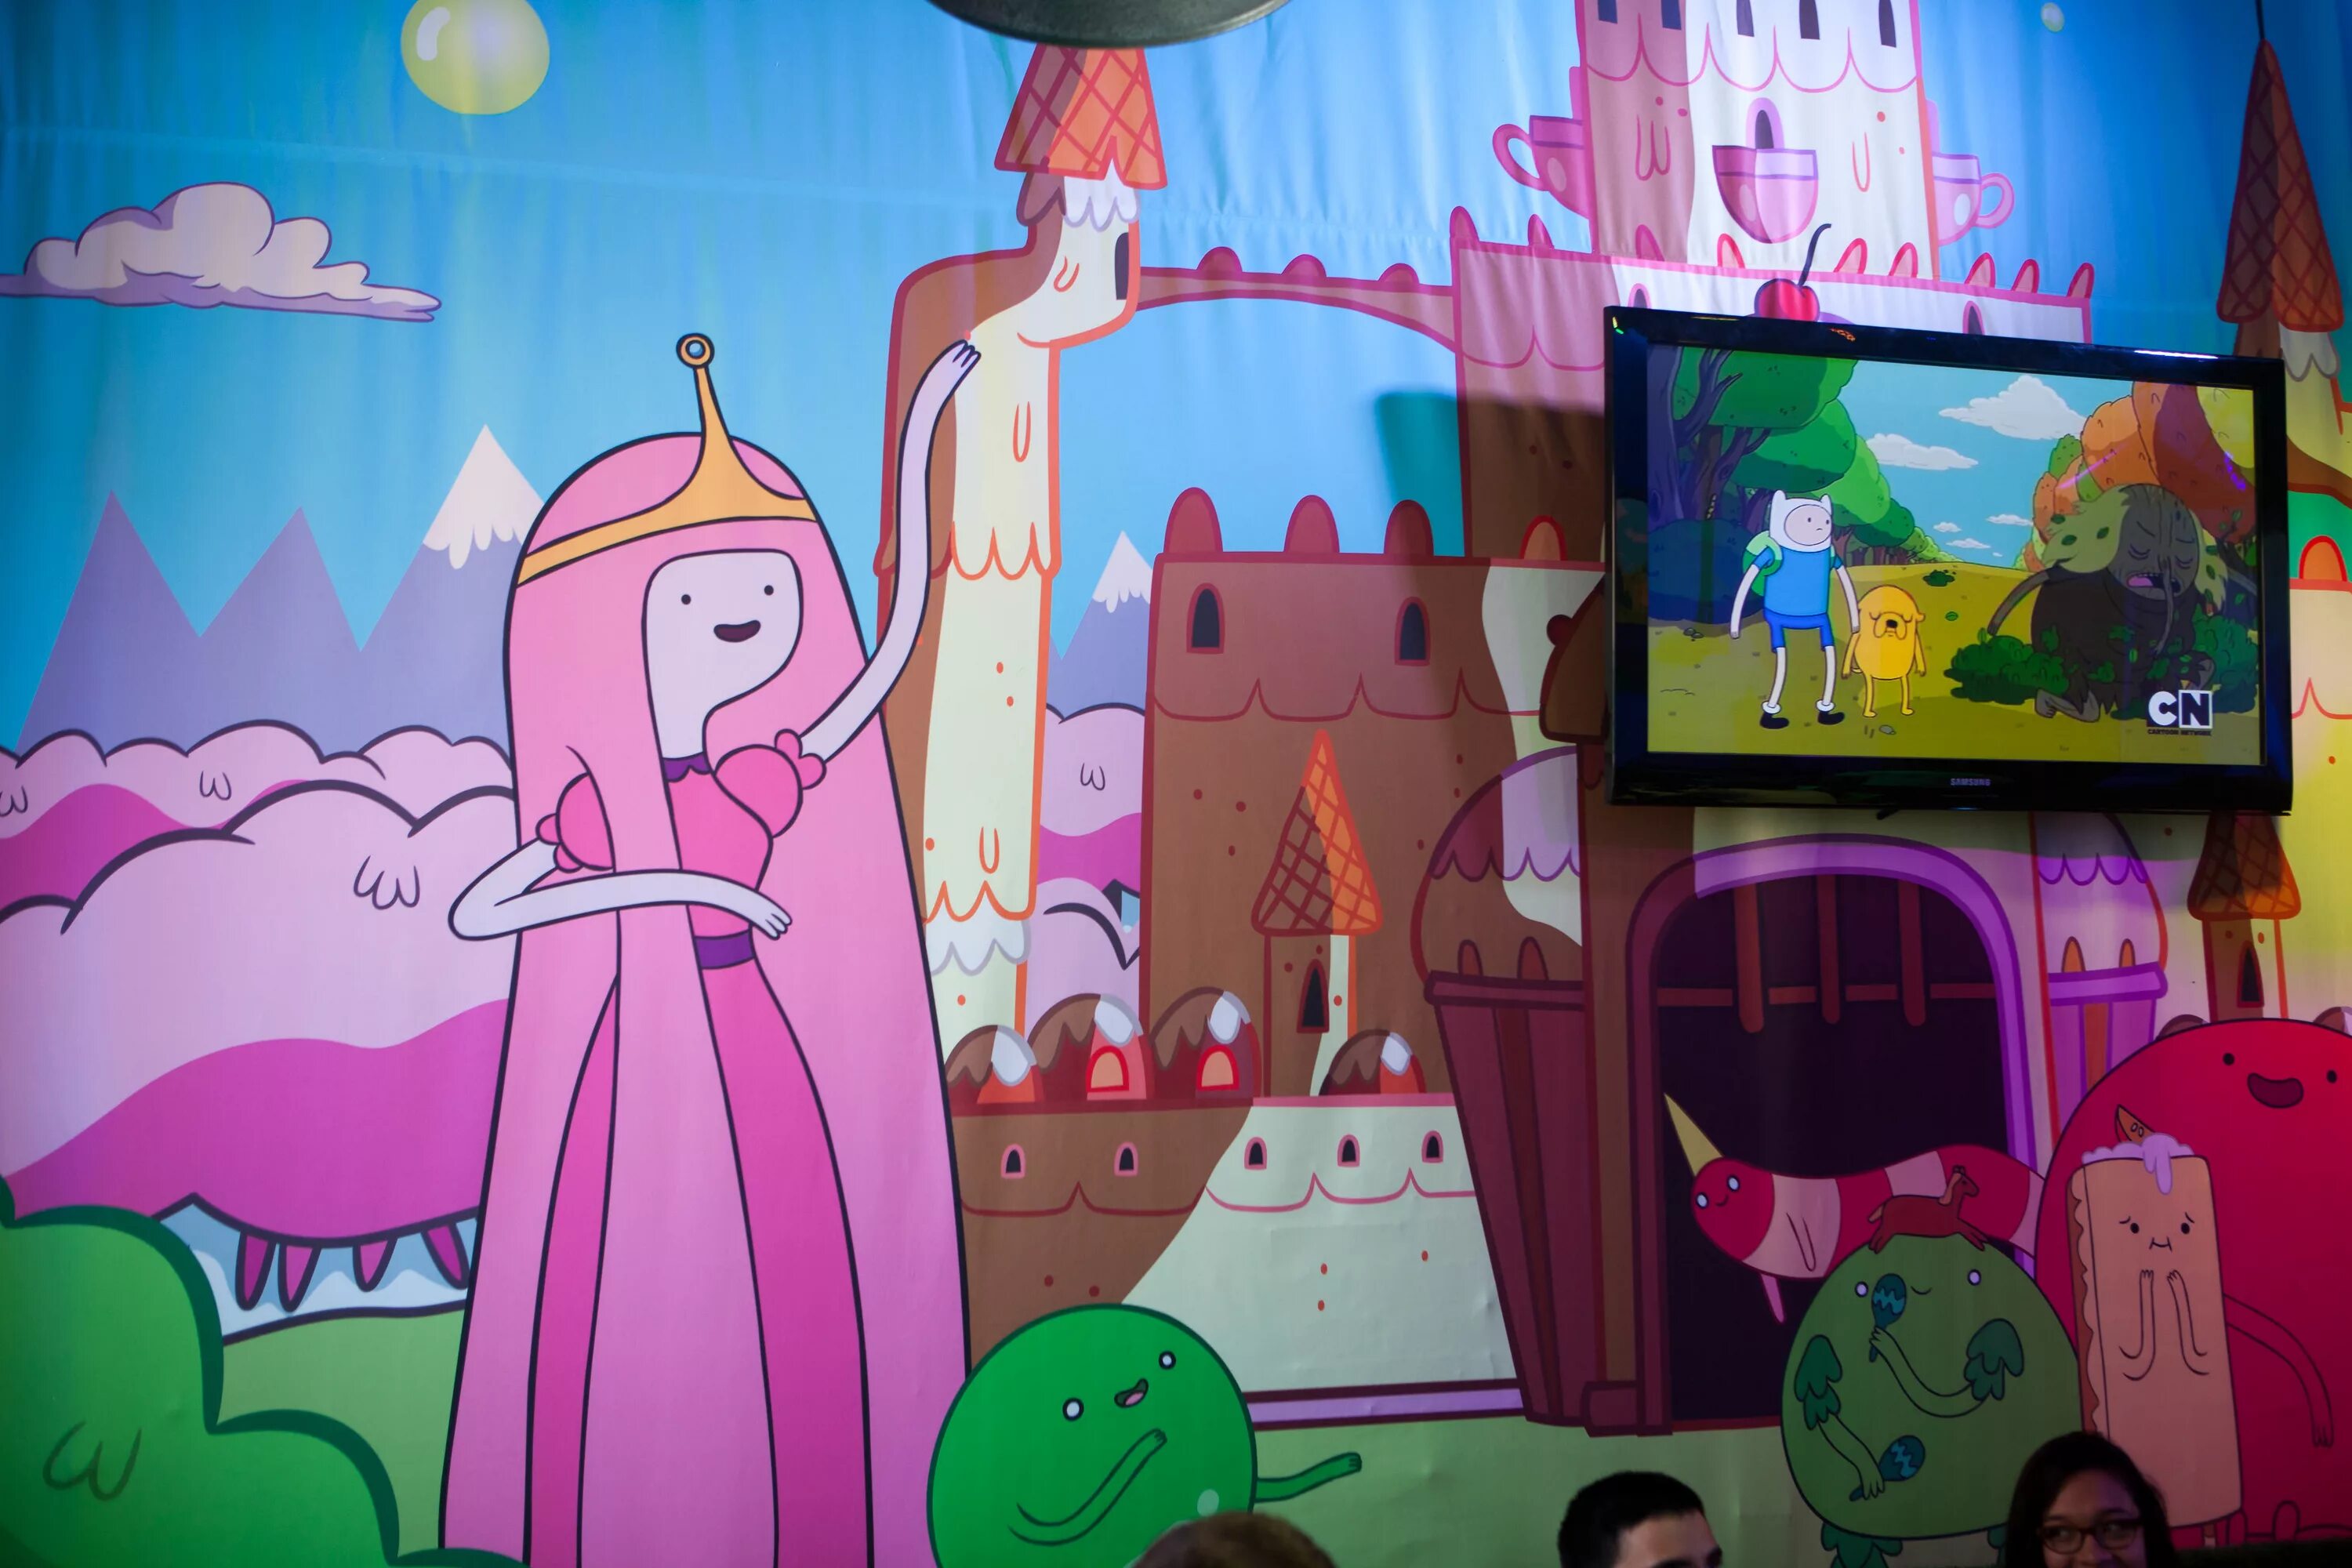 Королевство принцессы. Королевство принцессы Бубль ГУМ. Adventure time конфетное королевство. Конфетное королевство принцессы Бубль ГУМ. Империя Сласти время приключений.